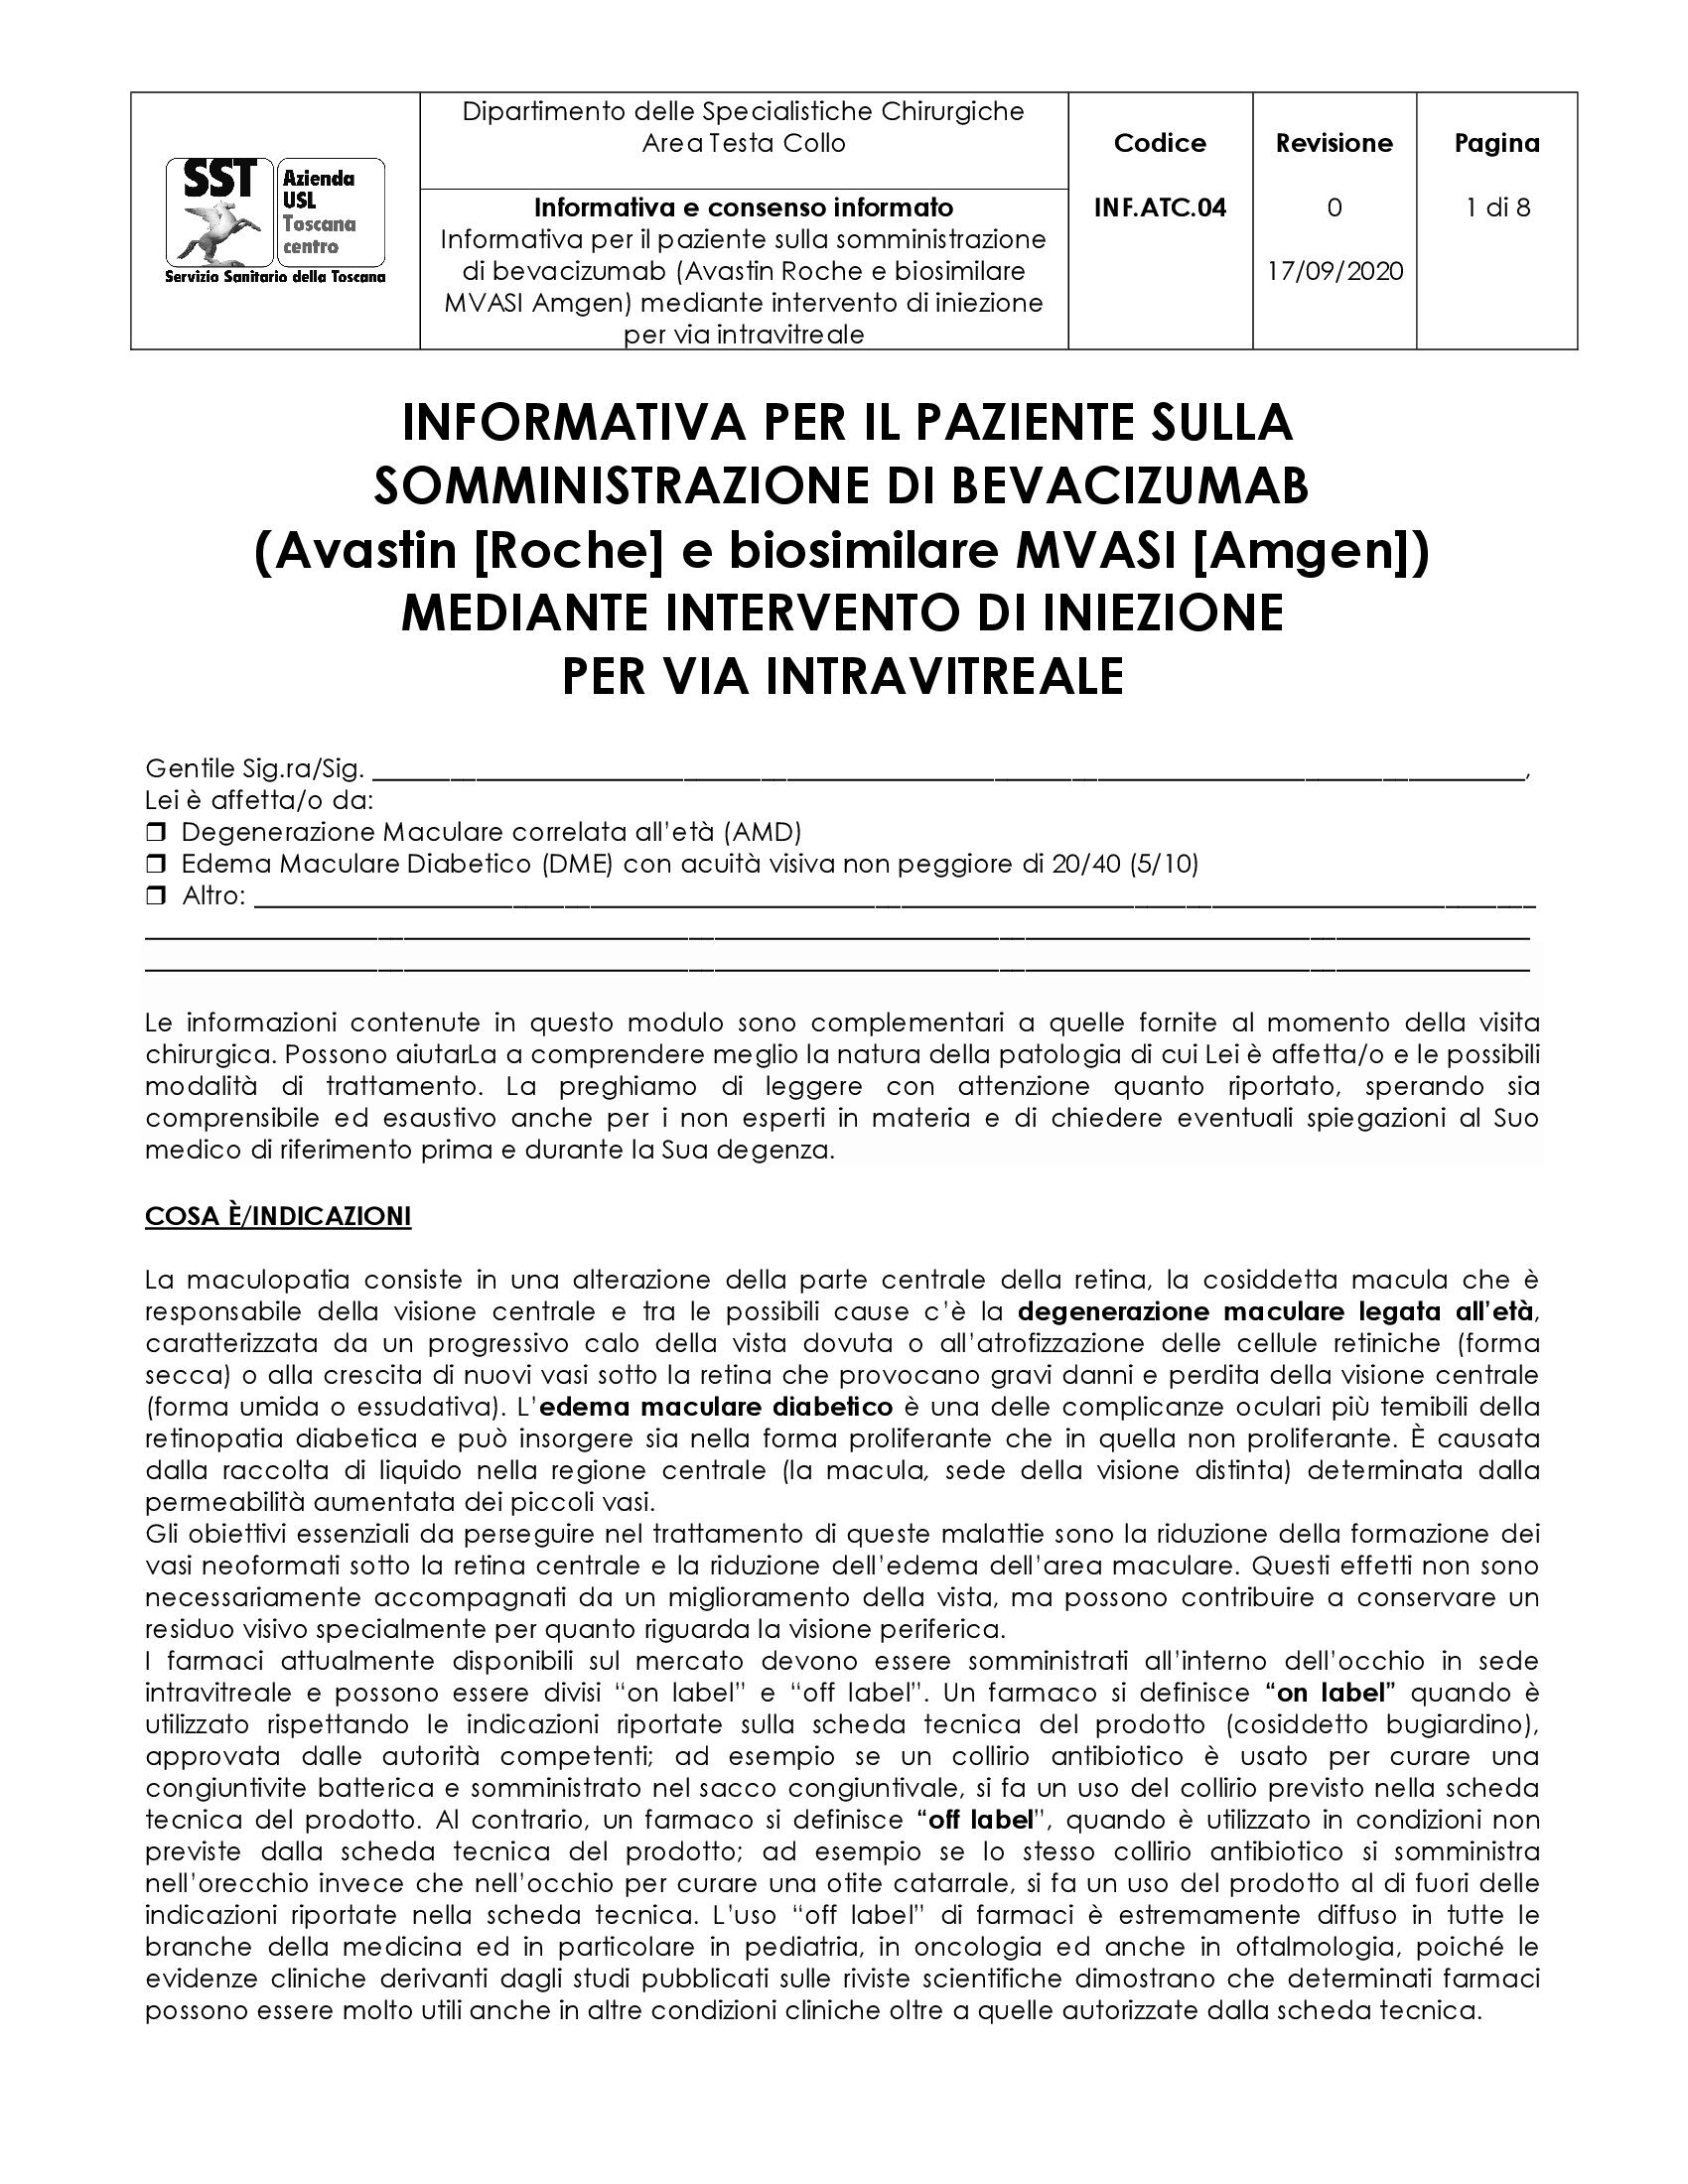 INF.ATC.04 Informativa per il paziente sulla somministrazione di bevacizumab (Avastin [Roche] e biosimilare MVASI [Amgen]) mediante intervento di iniezione per via intravitreale